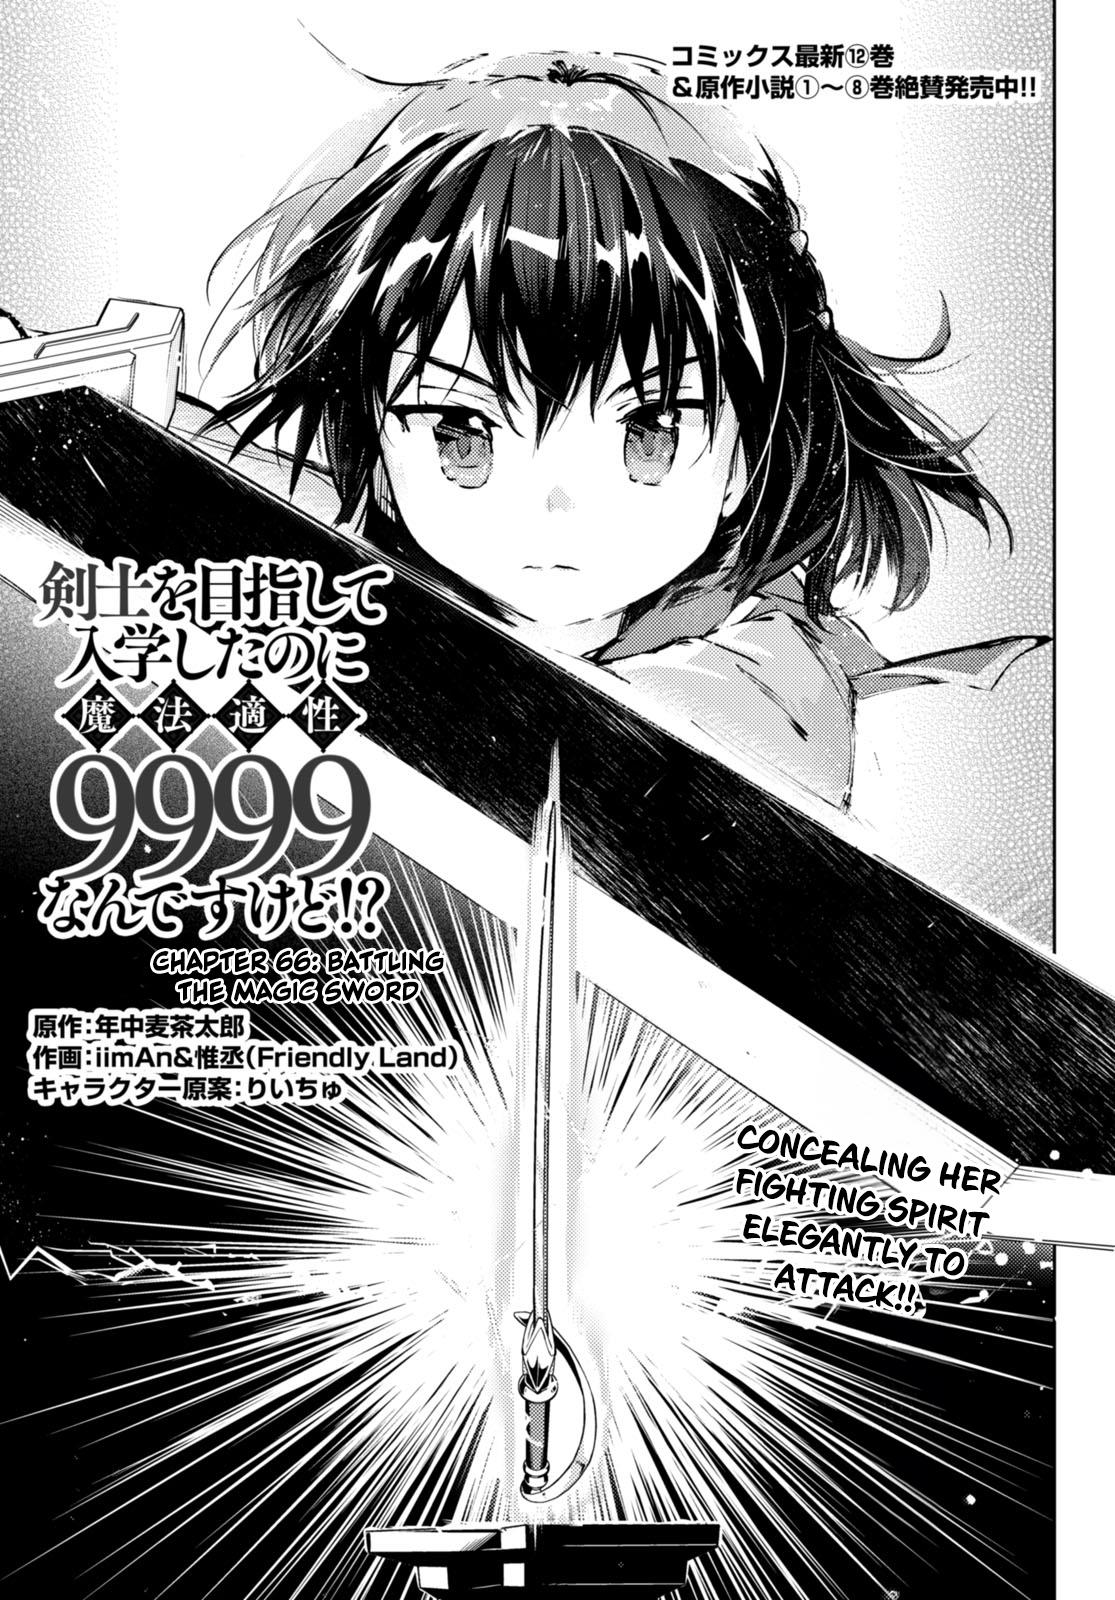 Kenshi O Mezashite Nyugaku Shitanoni Maho Tekisei 9999 Nandesukedo!? Chapter 66